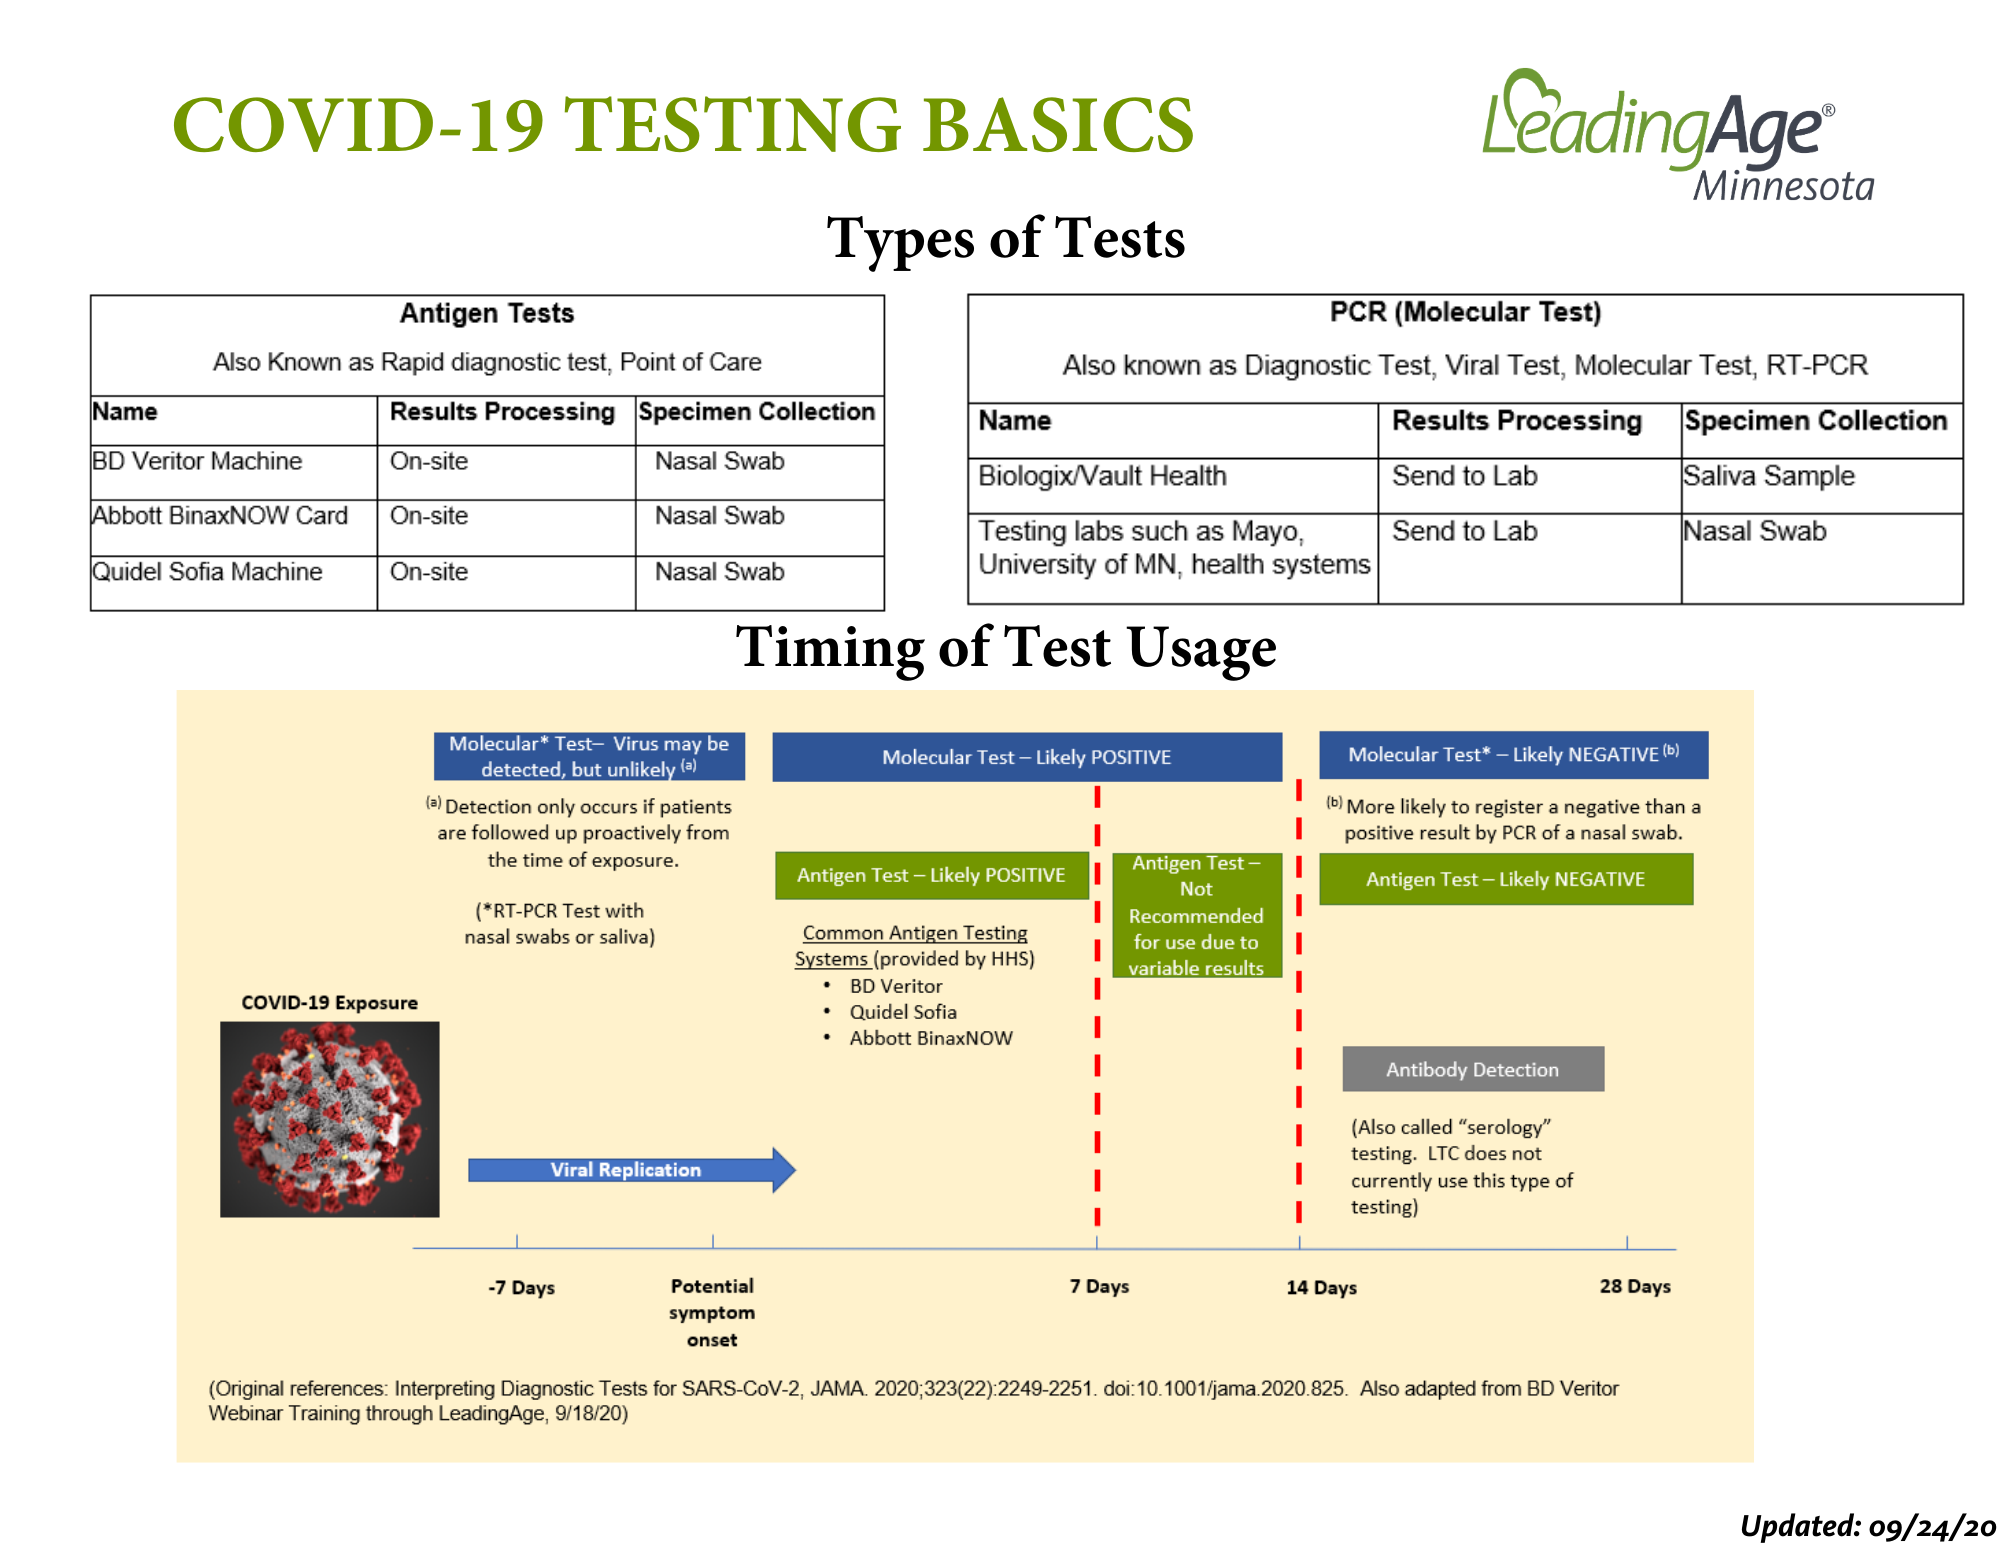 9.25.20 COVID 19 Testing Basics